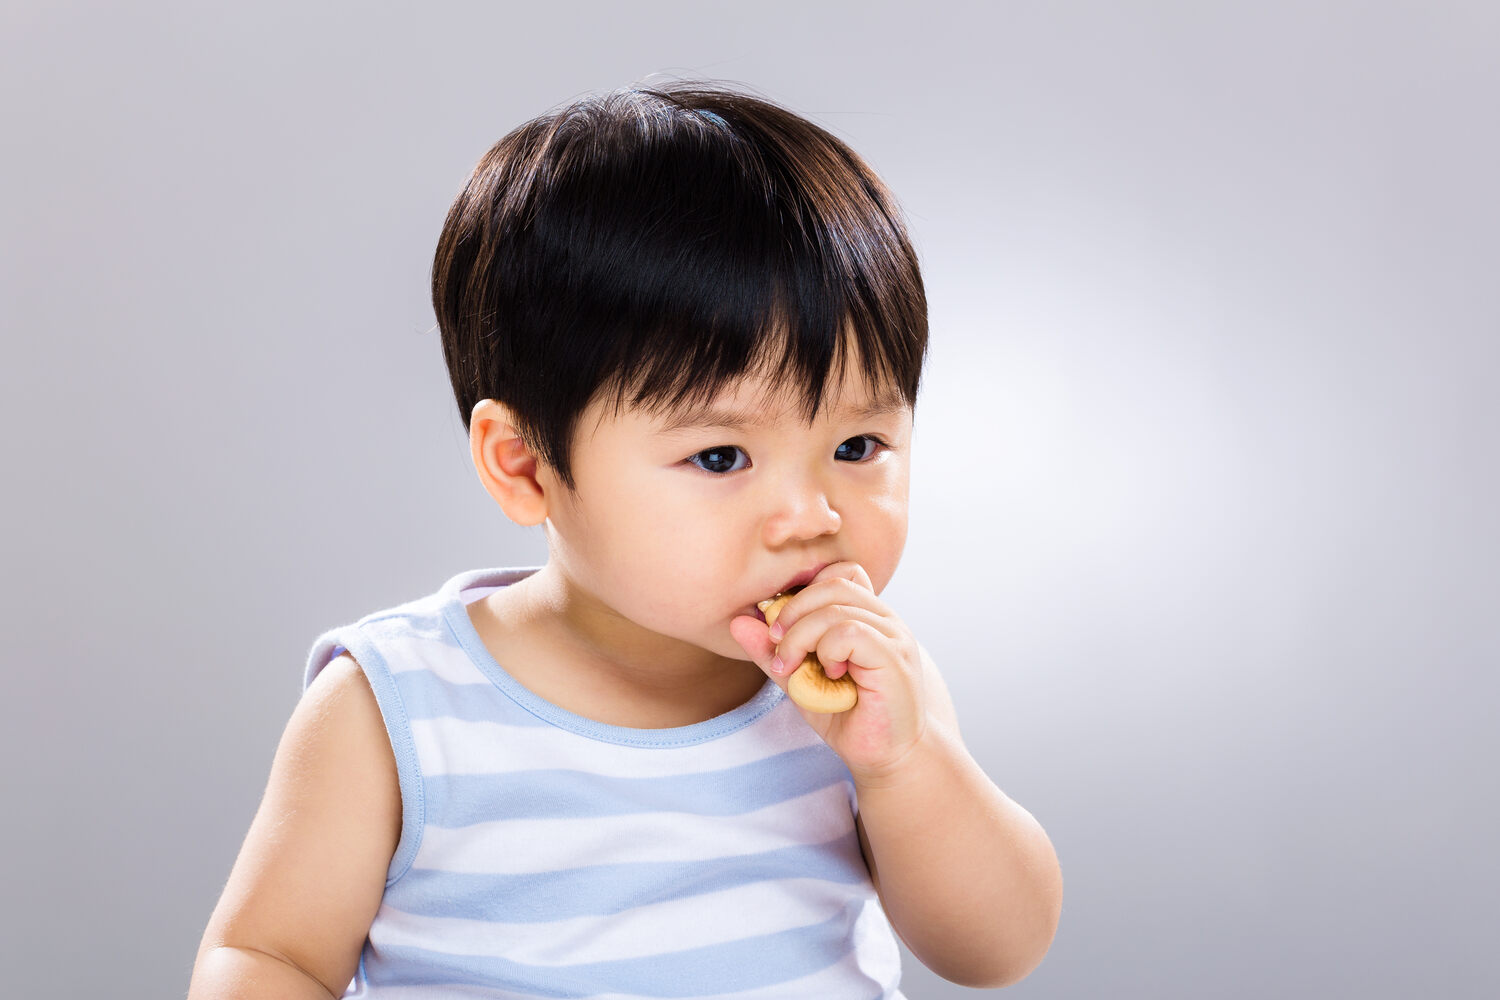 Toddler eating finger food